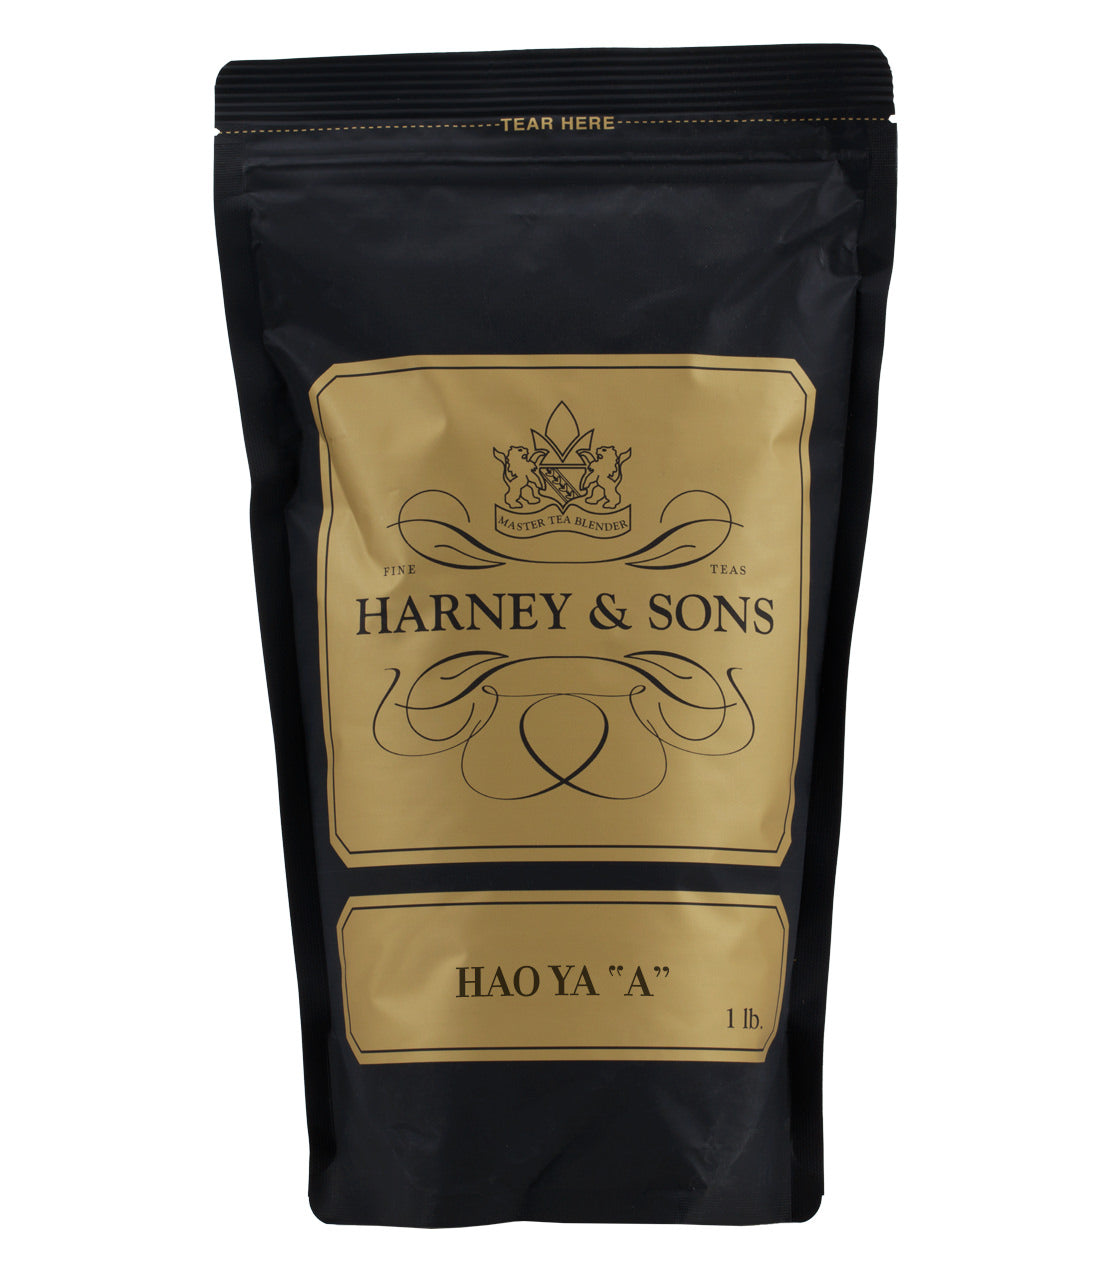 Hao Ya 'A' -   - Harney & Sons Fine Teas